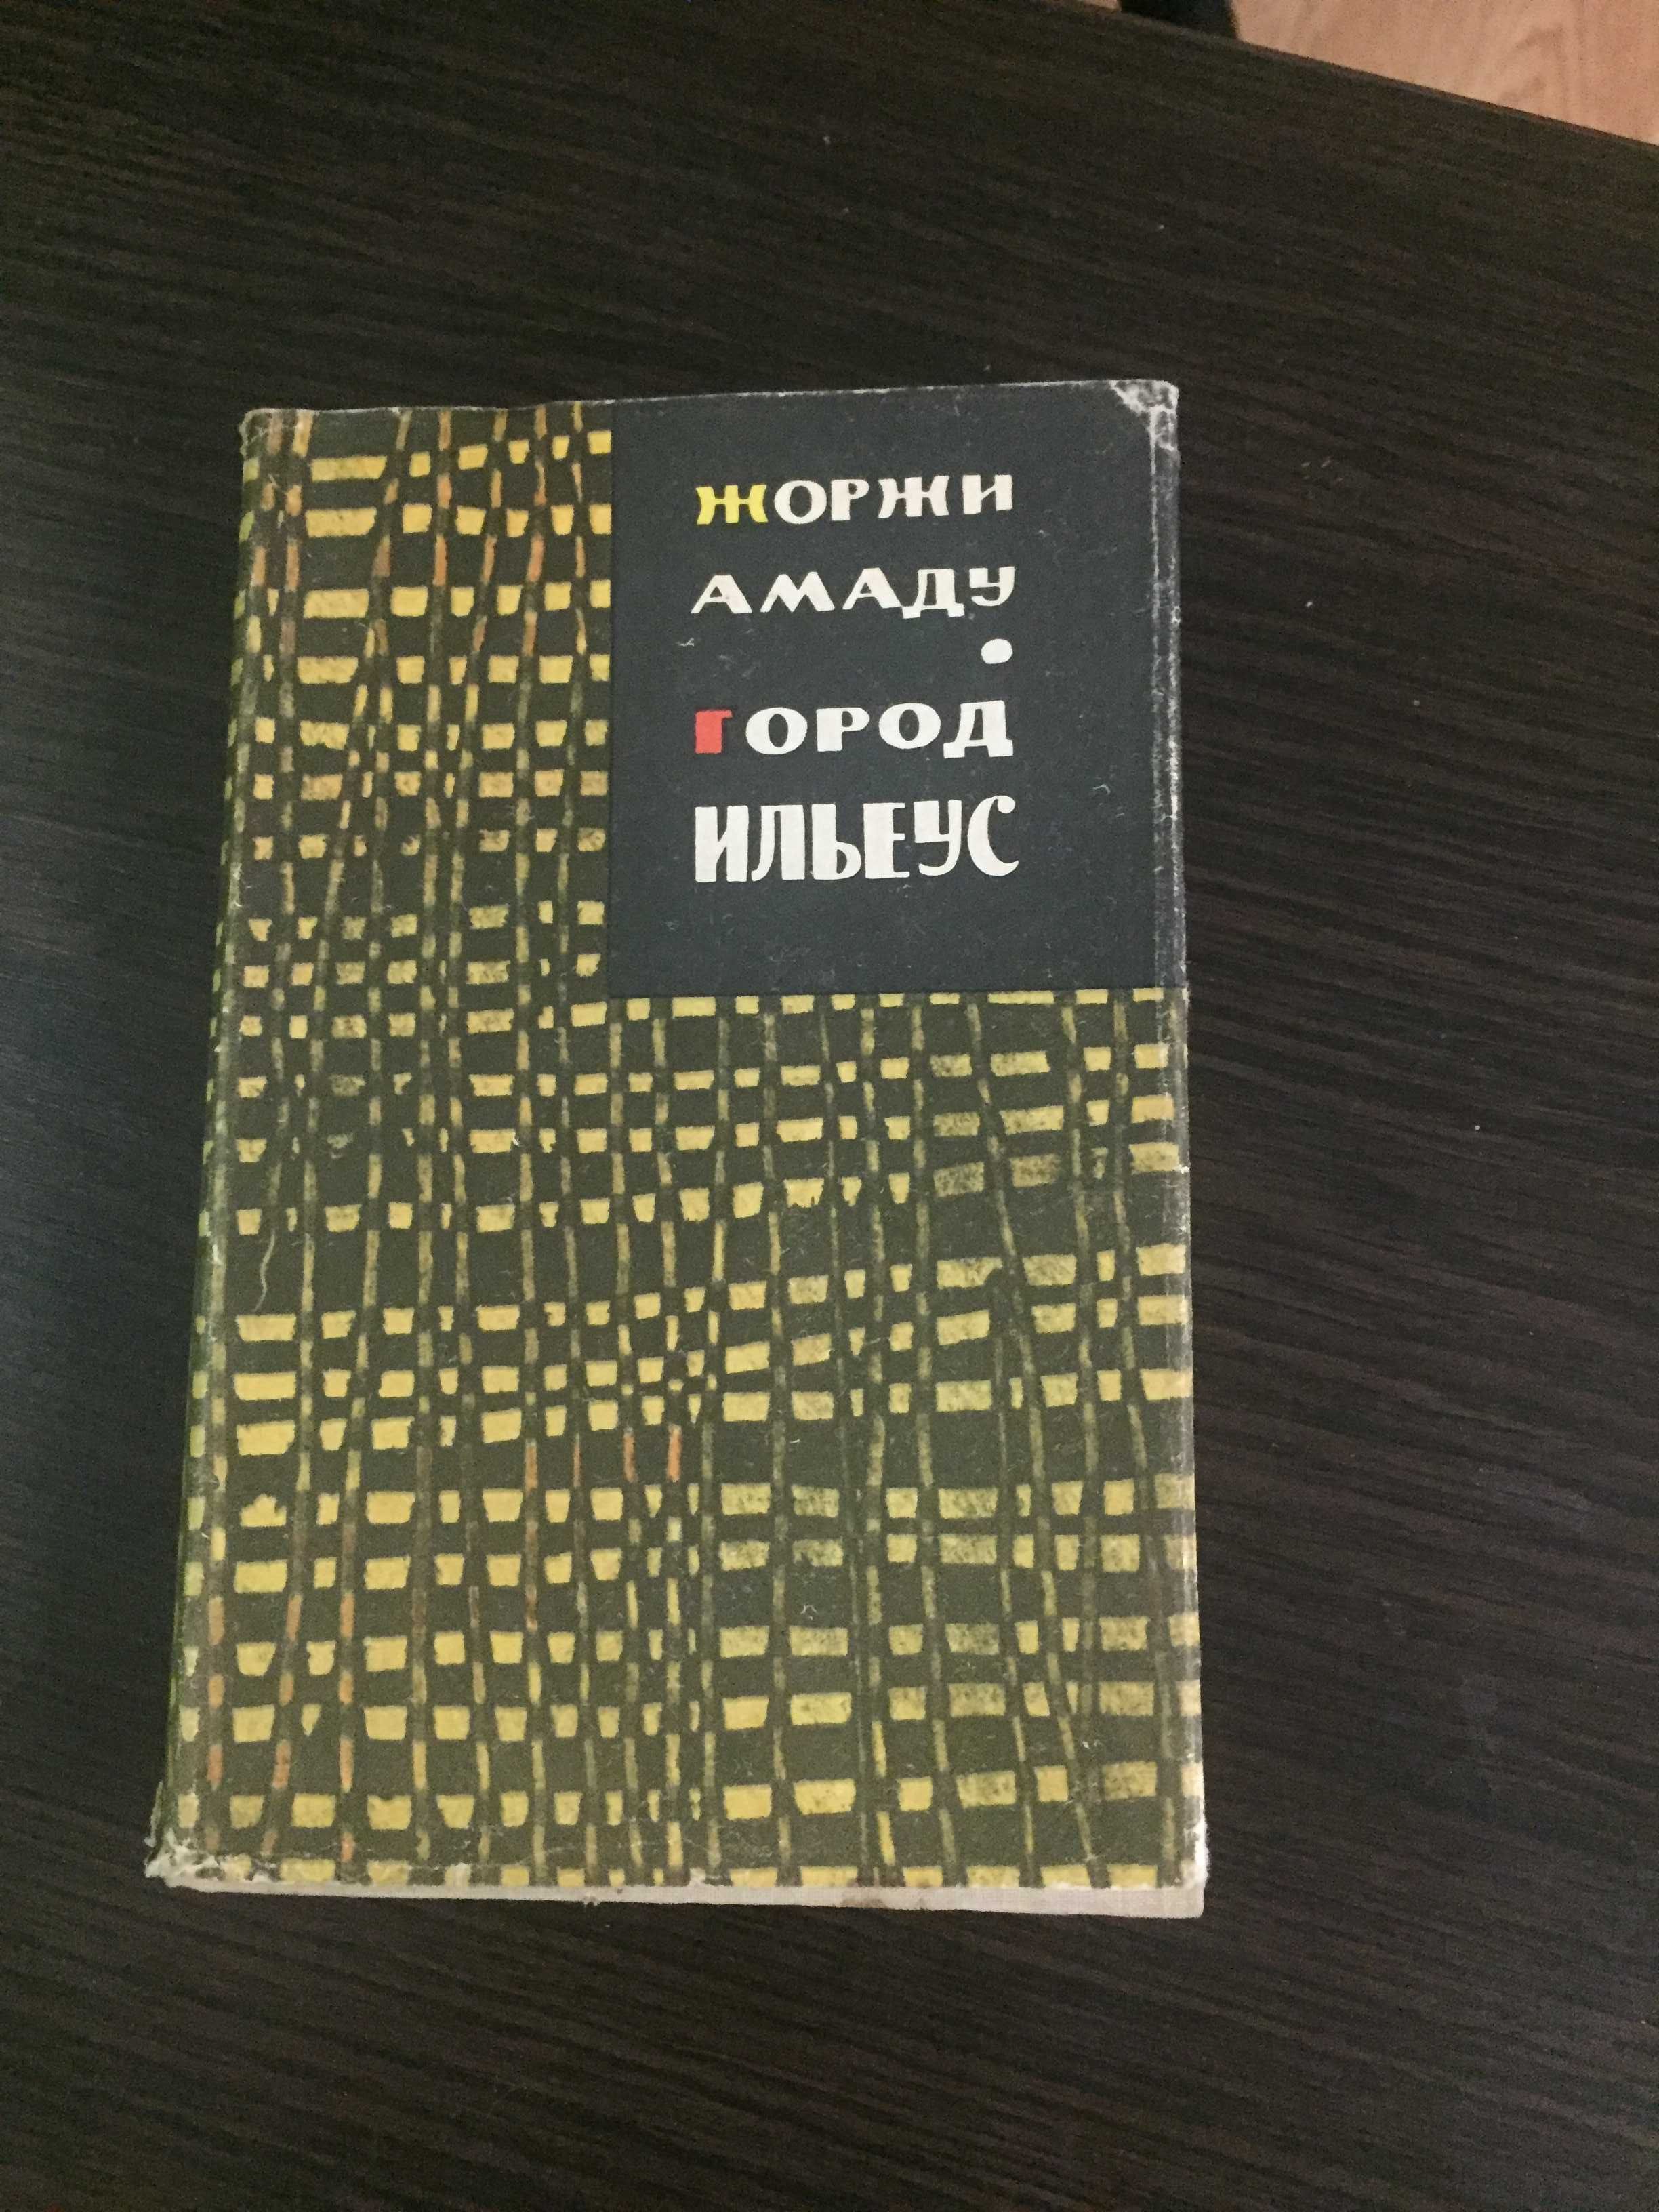 Книга Жоржи Амаду, Город Ильеус, 1963г., русский язык, новая